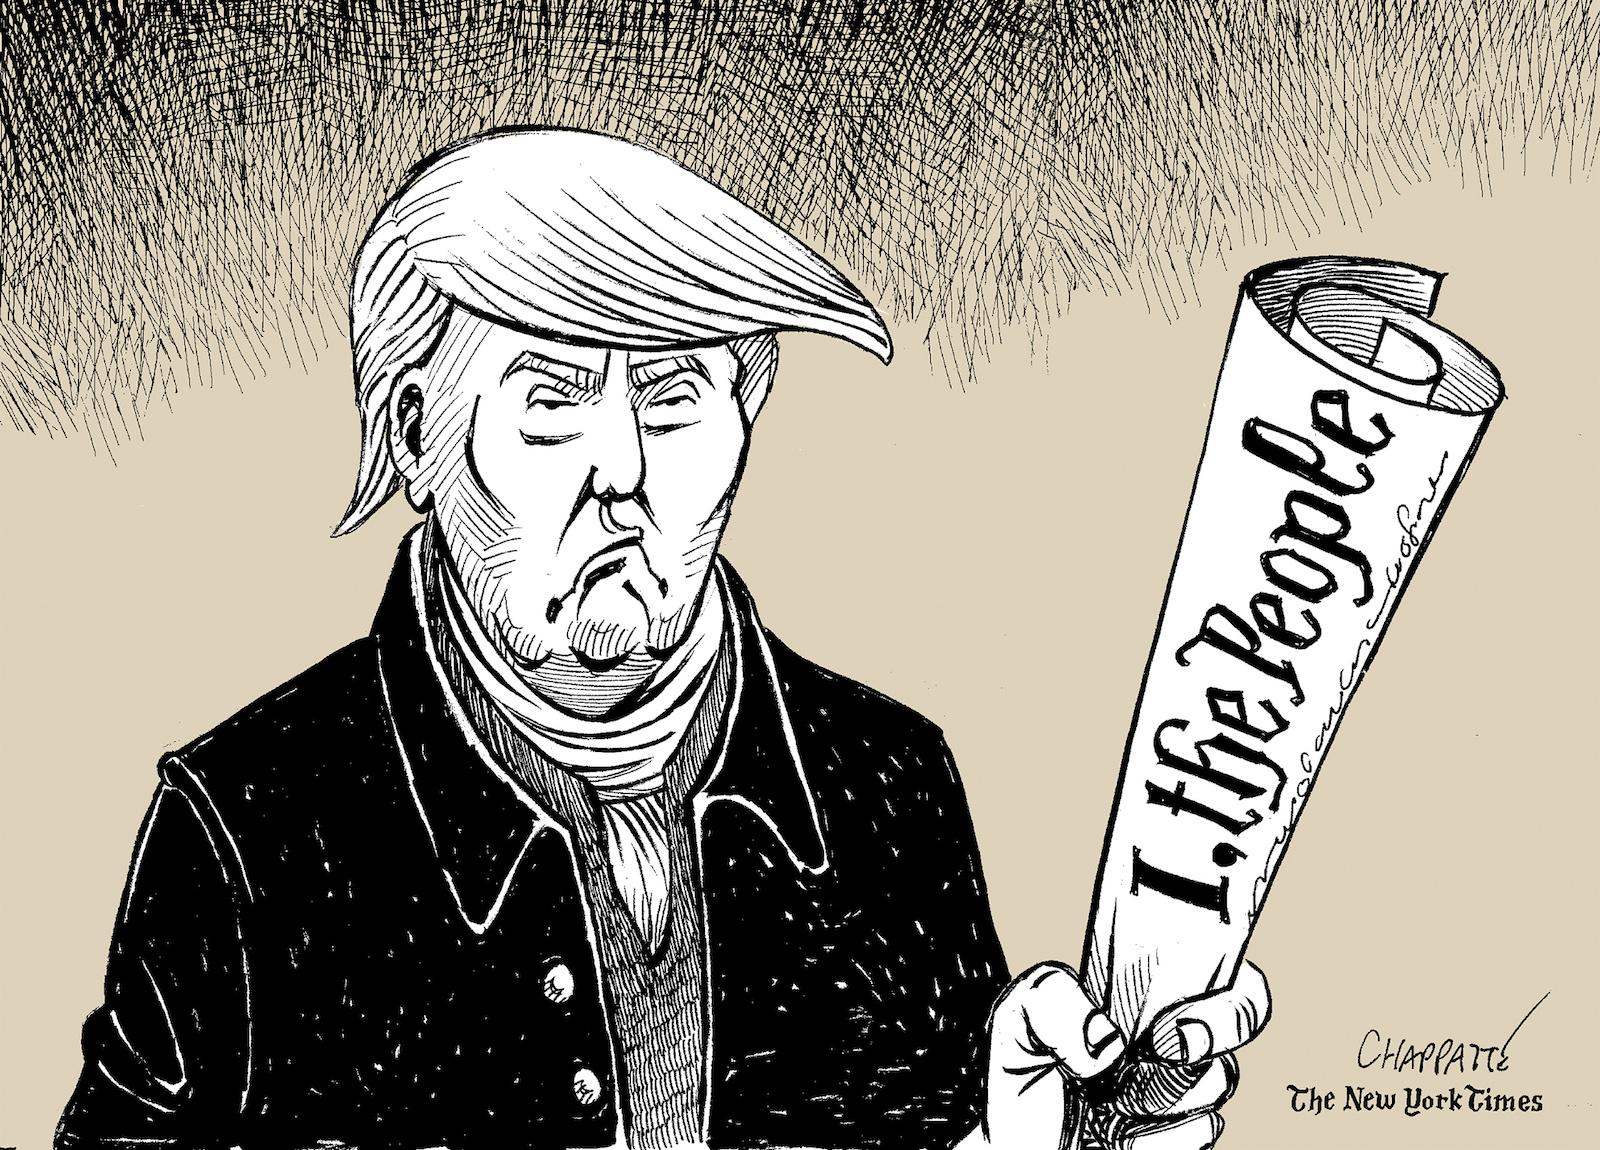 Trump The Demagogue